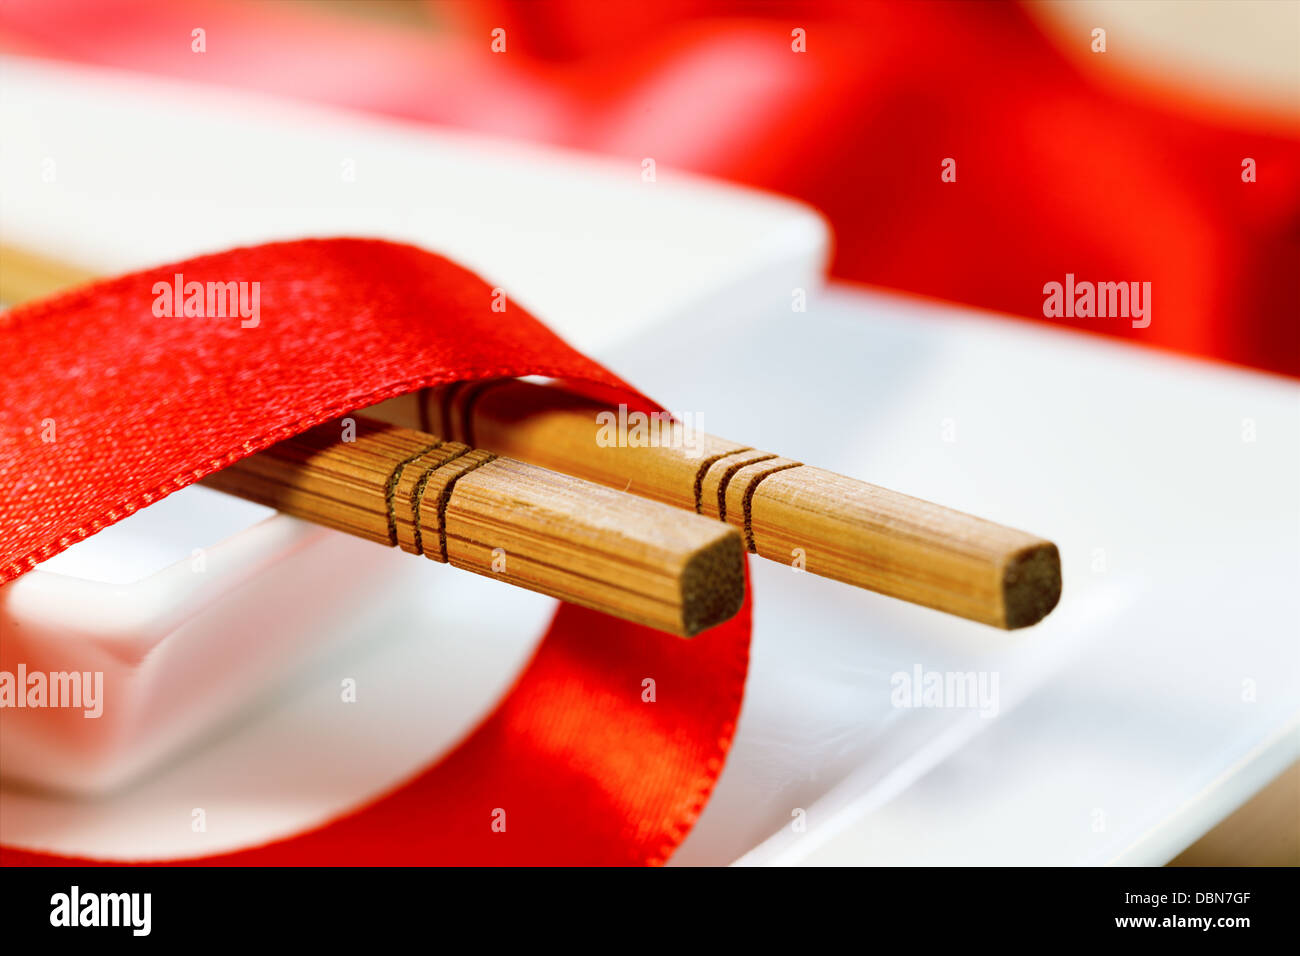 Los palillos y la cinta roja en una placa Foto de stock